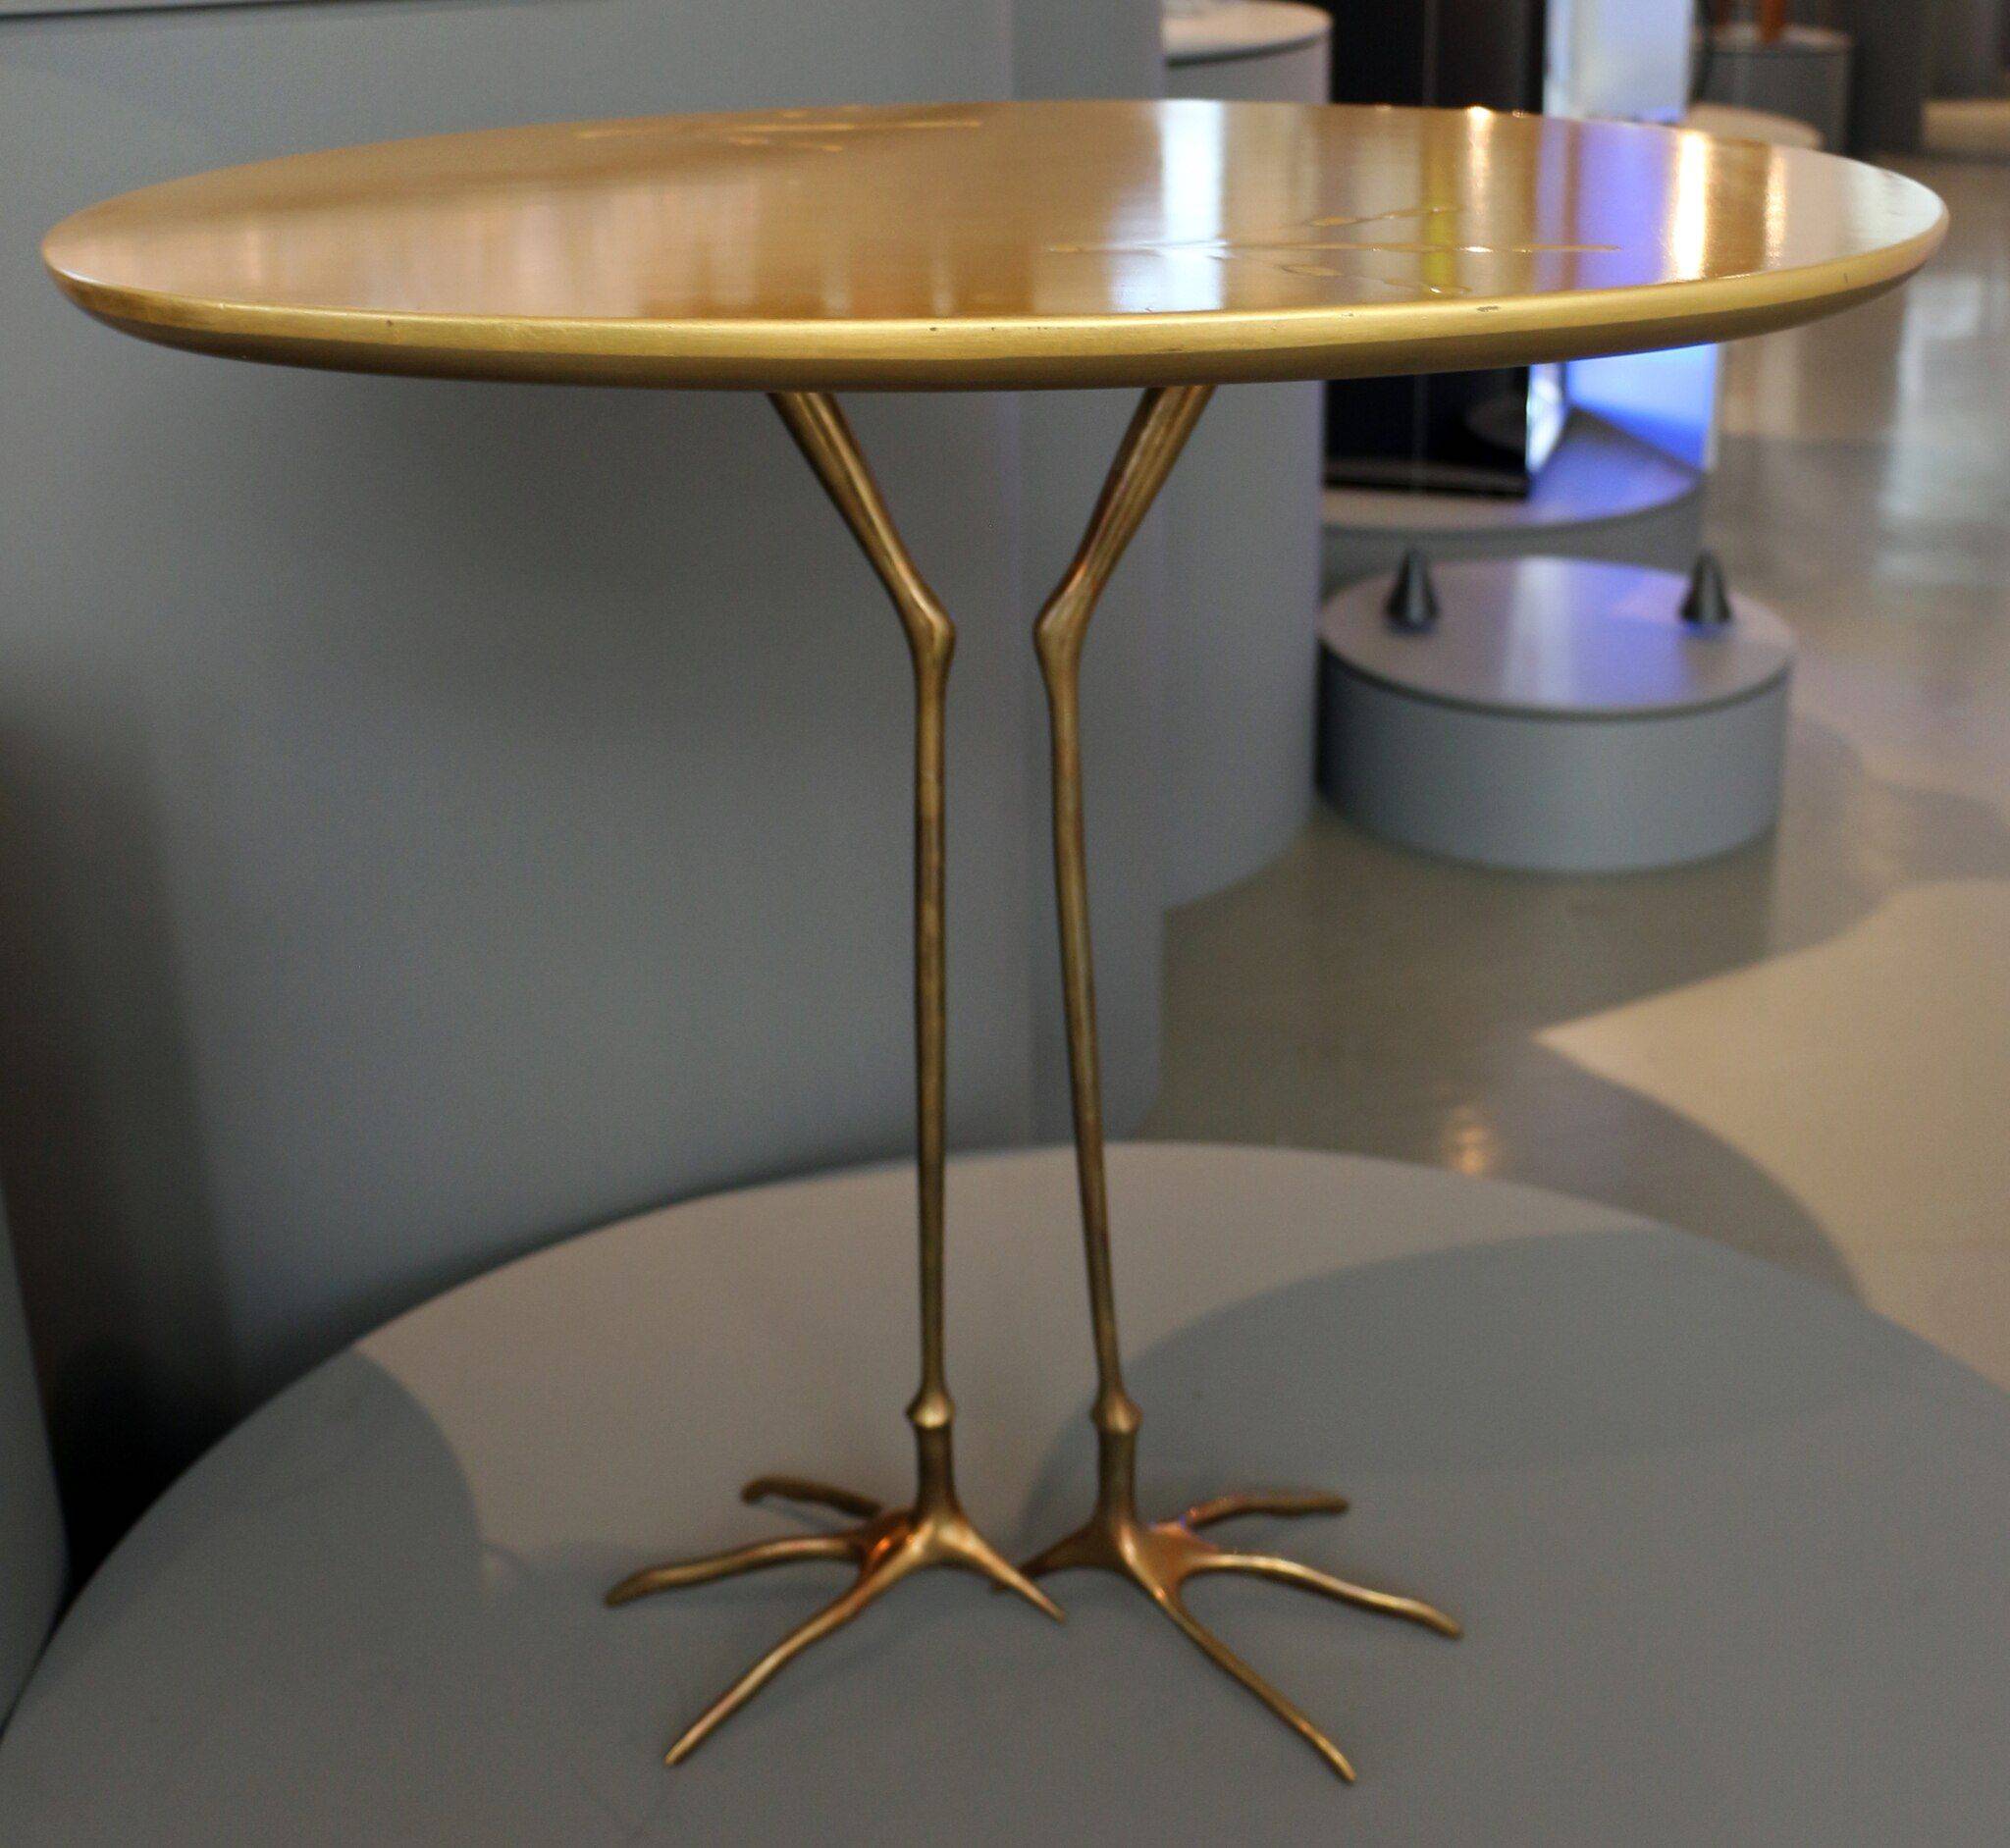 Meret Oppenheim: Tisch mit Vogelfüßen 1972 (CC BY 3.0), Foto Sailko 